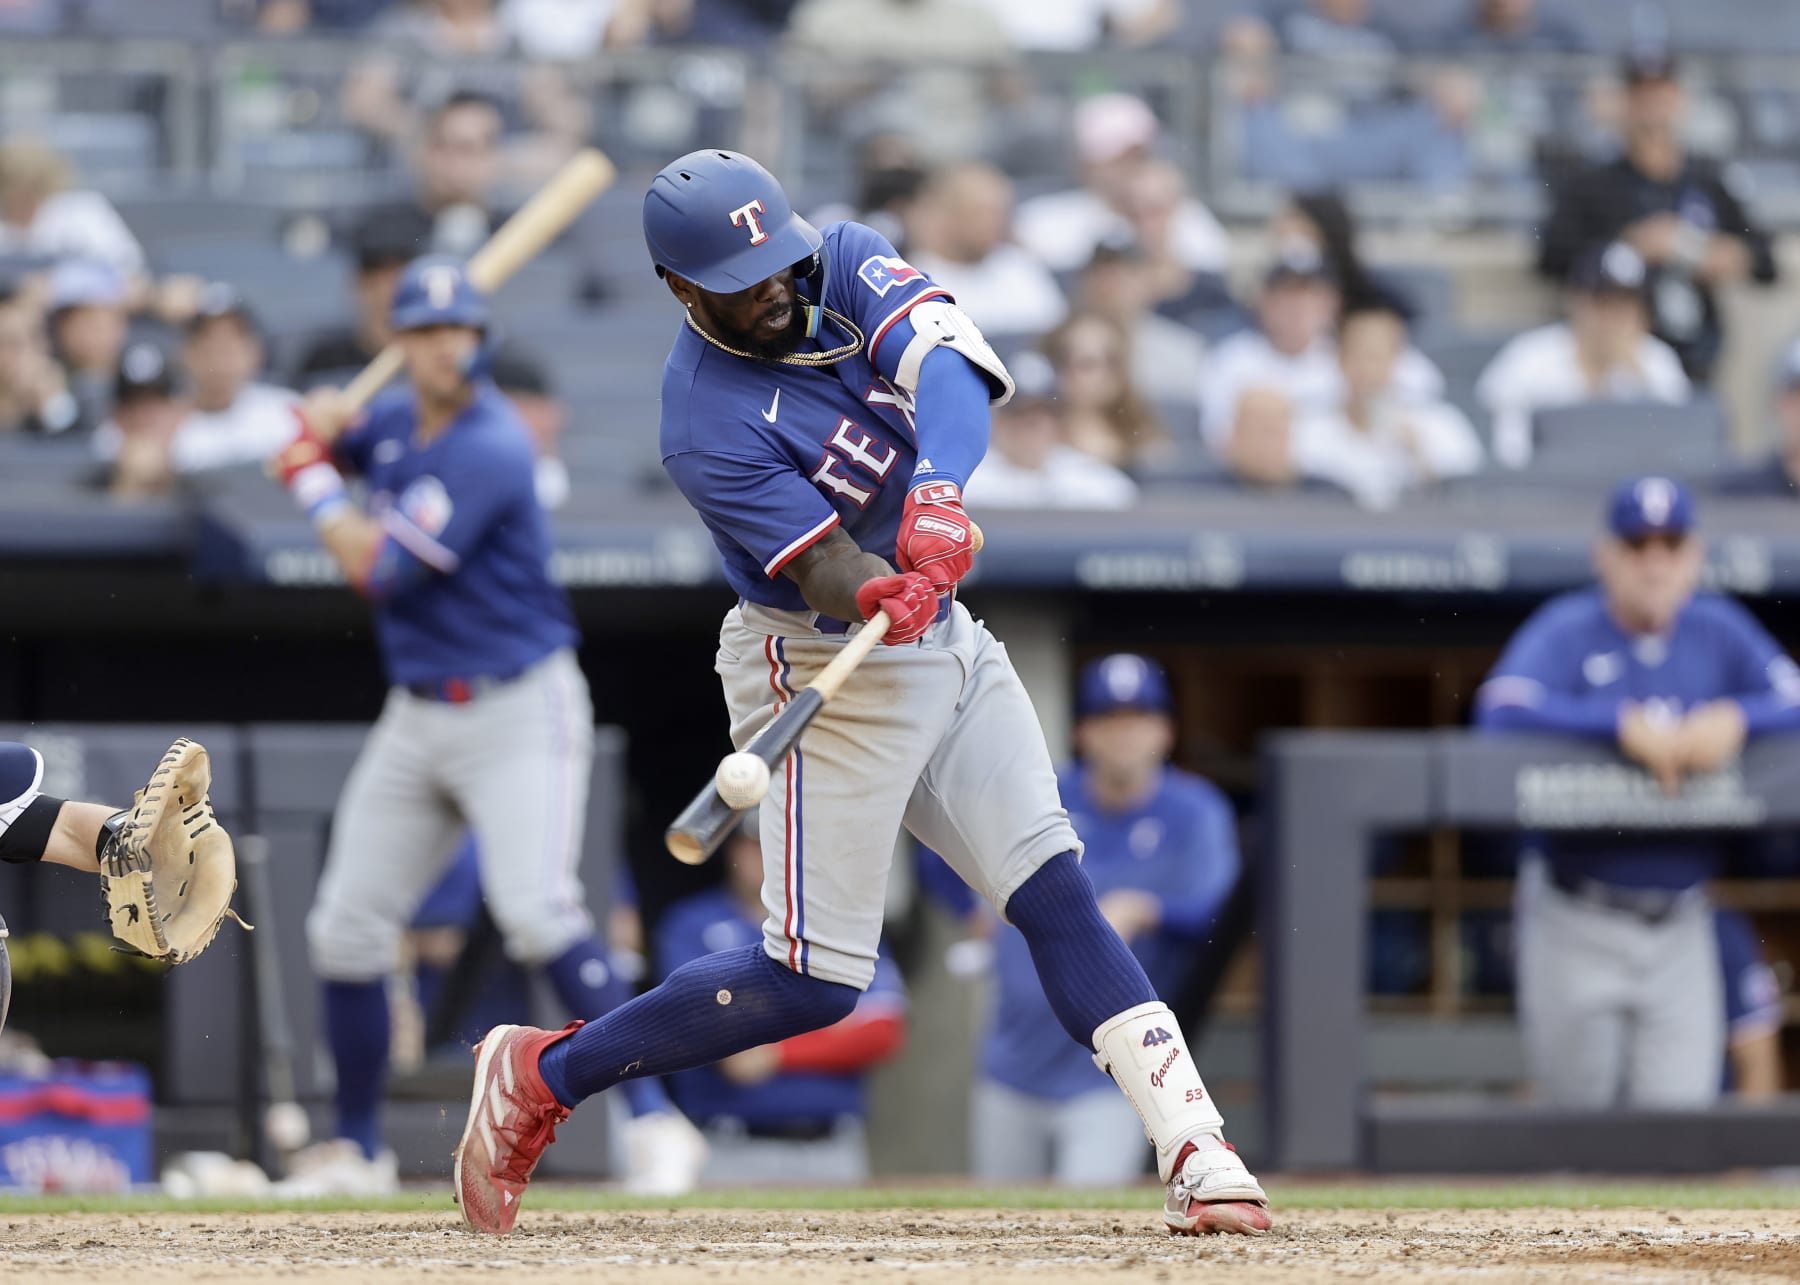 2019 Home Run Derby Bracket: Dodgers' Joc Pederson Ranked No. 5